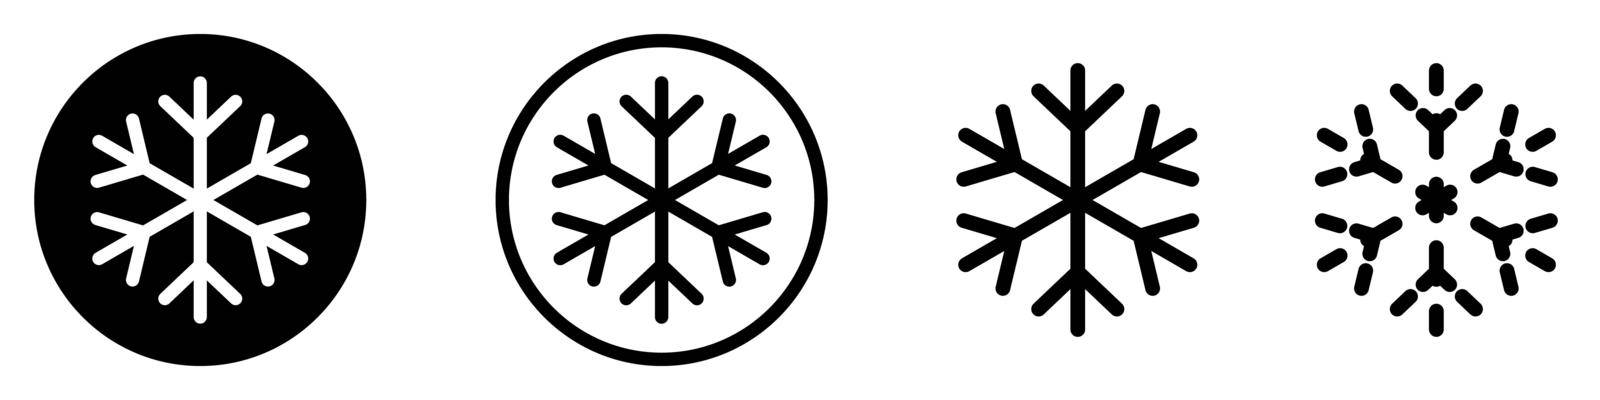 Snowflake icon. Set of abstract snowflakes. Black snowflake icon by Chekman